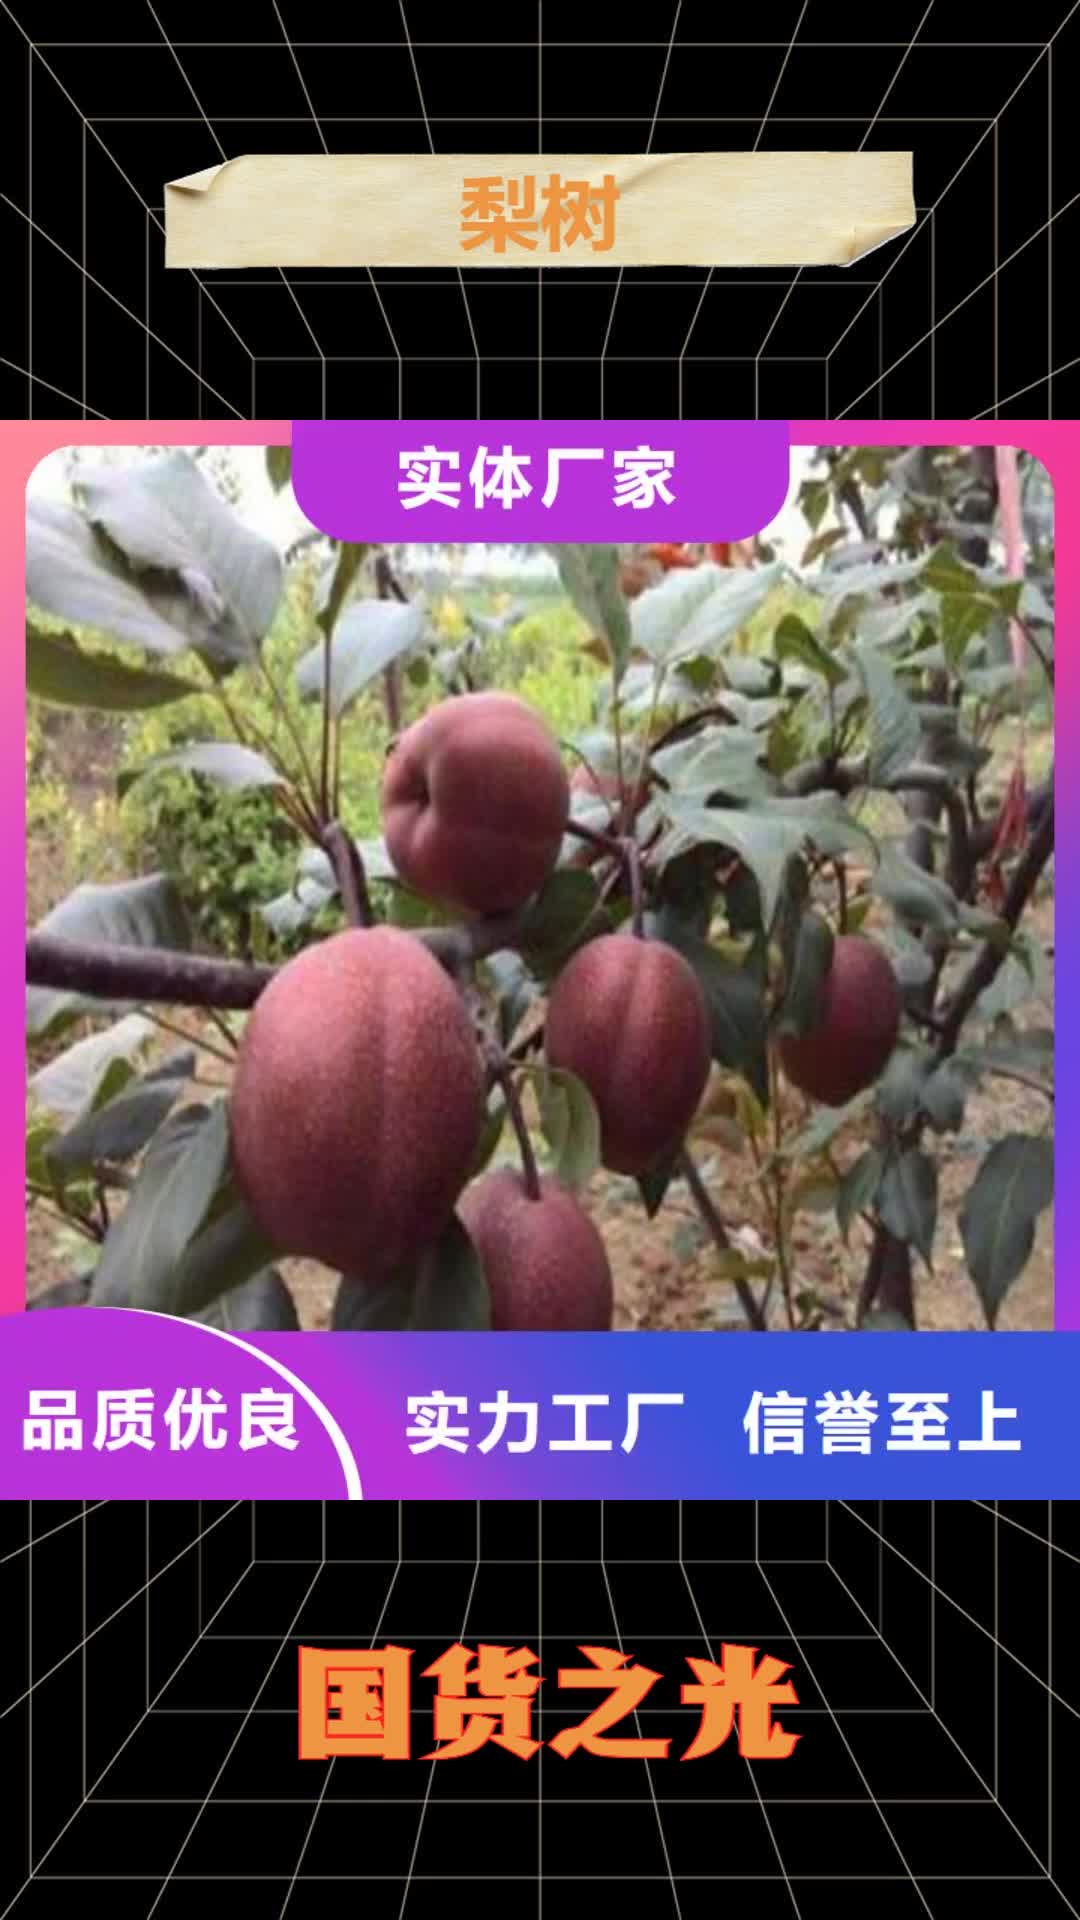 阜阳 梨树 【苹果苗】使用方法